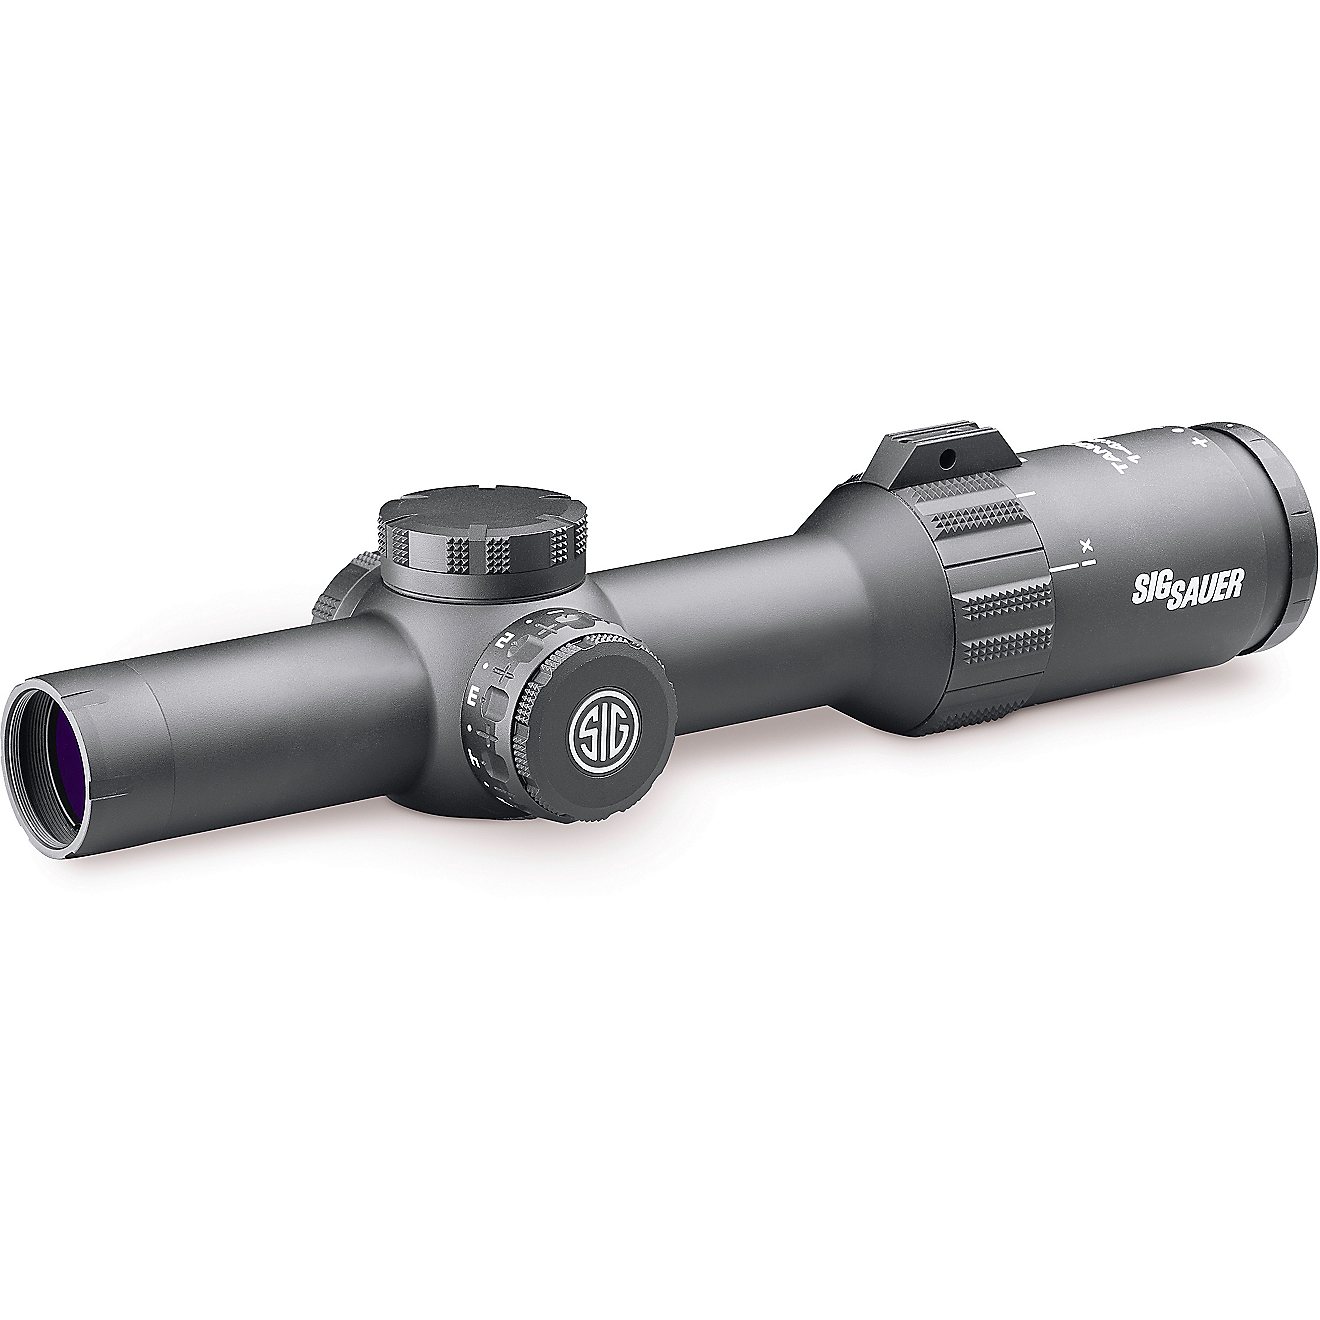 SIG SAUER Electro-Optics SOT41111 Tango4 1 - 4 x 24 Riflescope                                                                   - view number 1